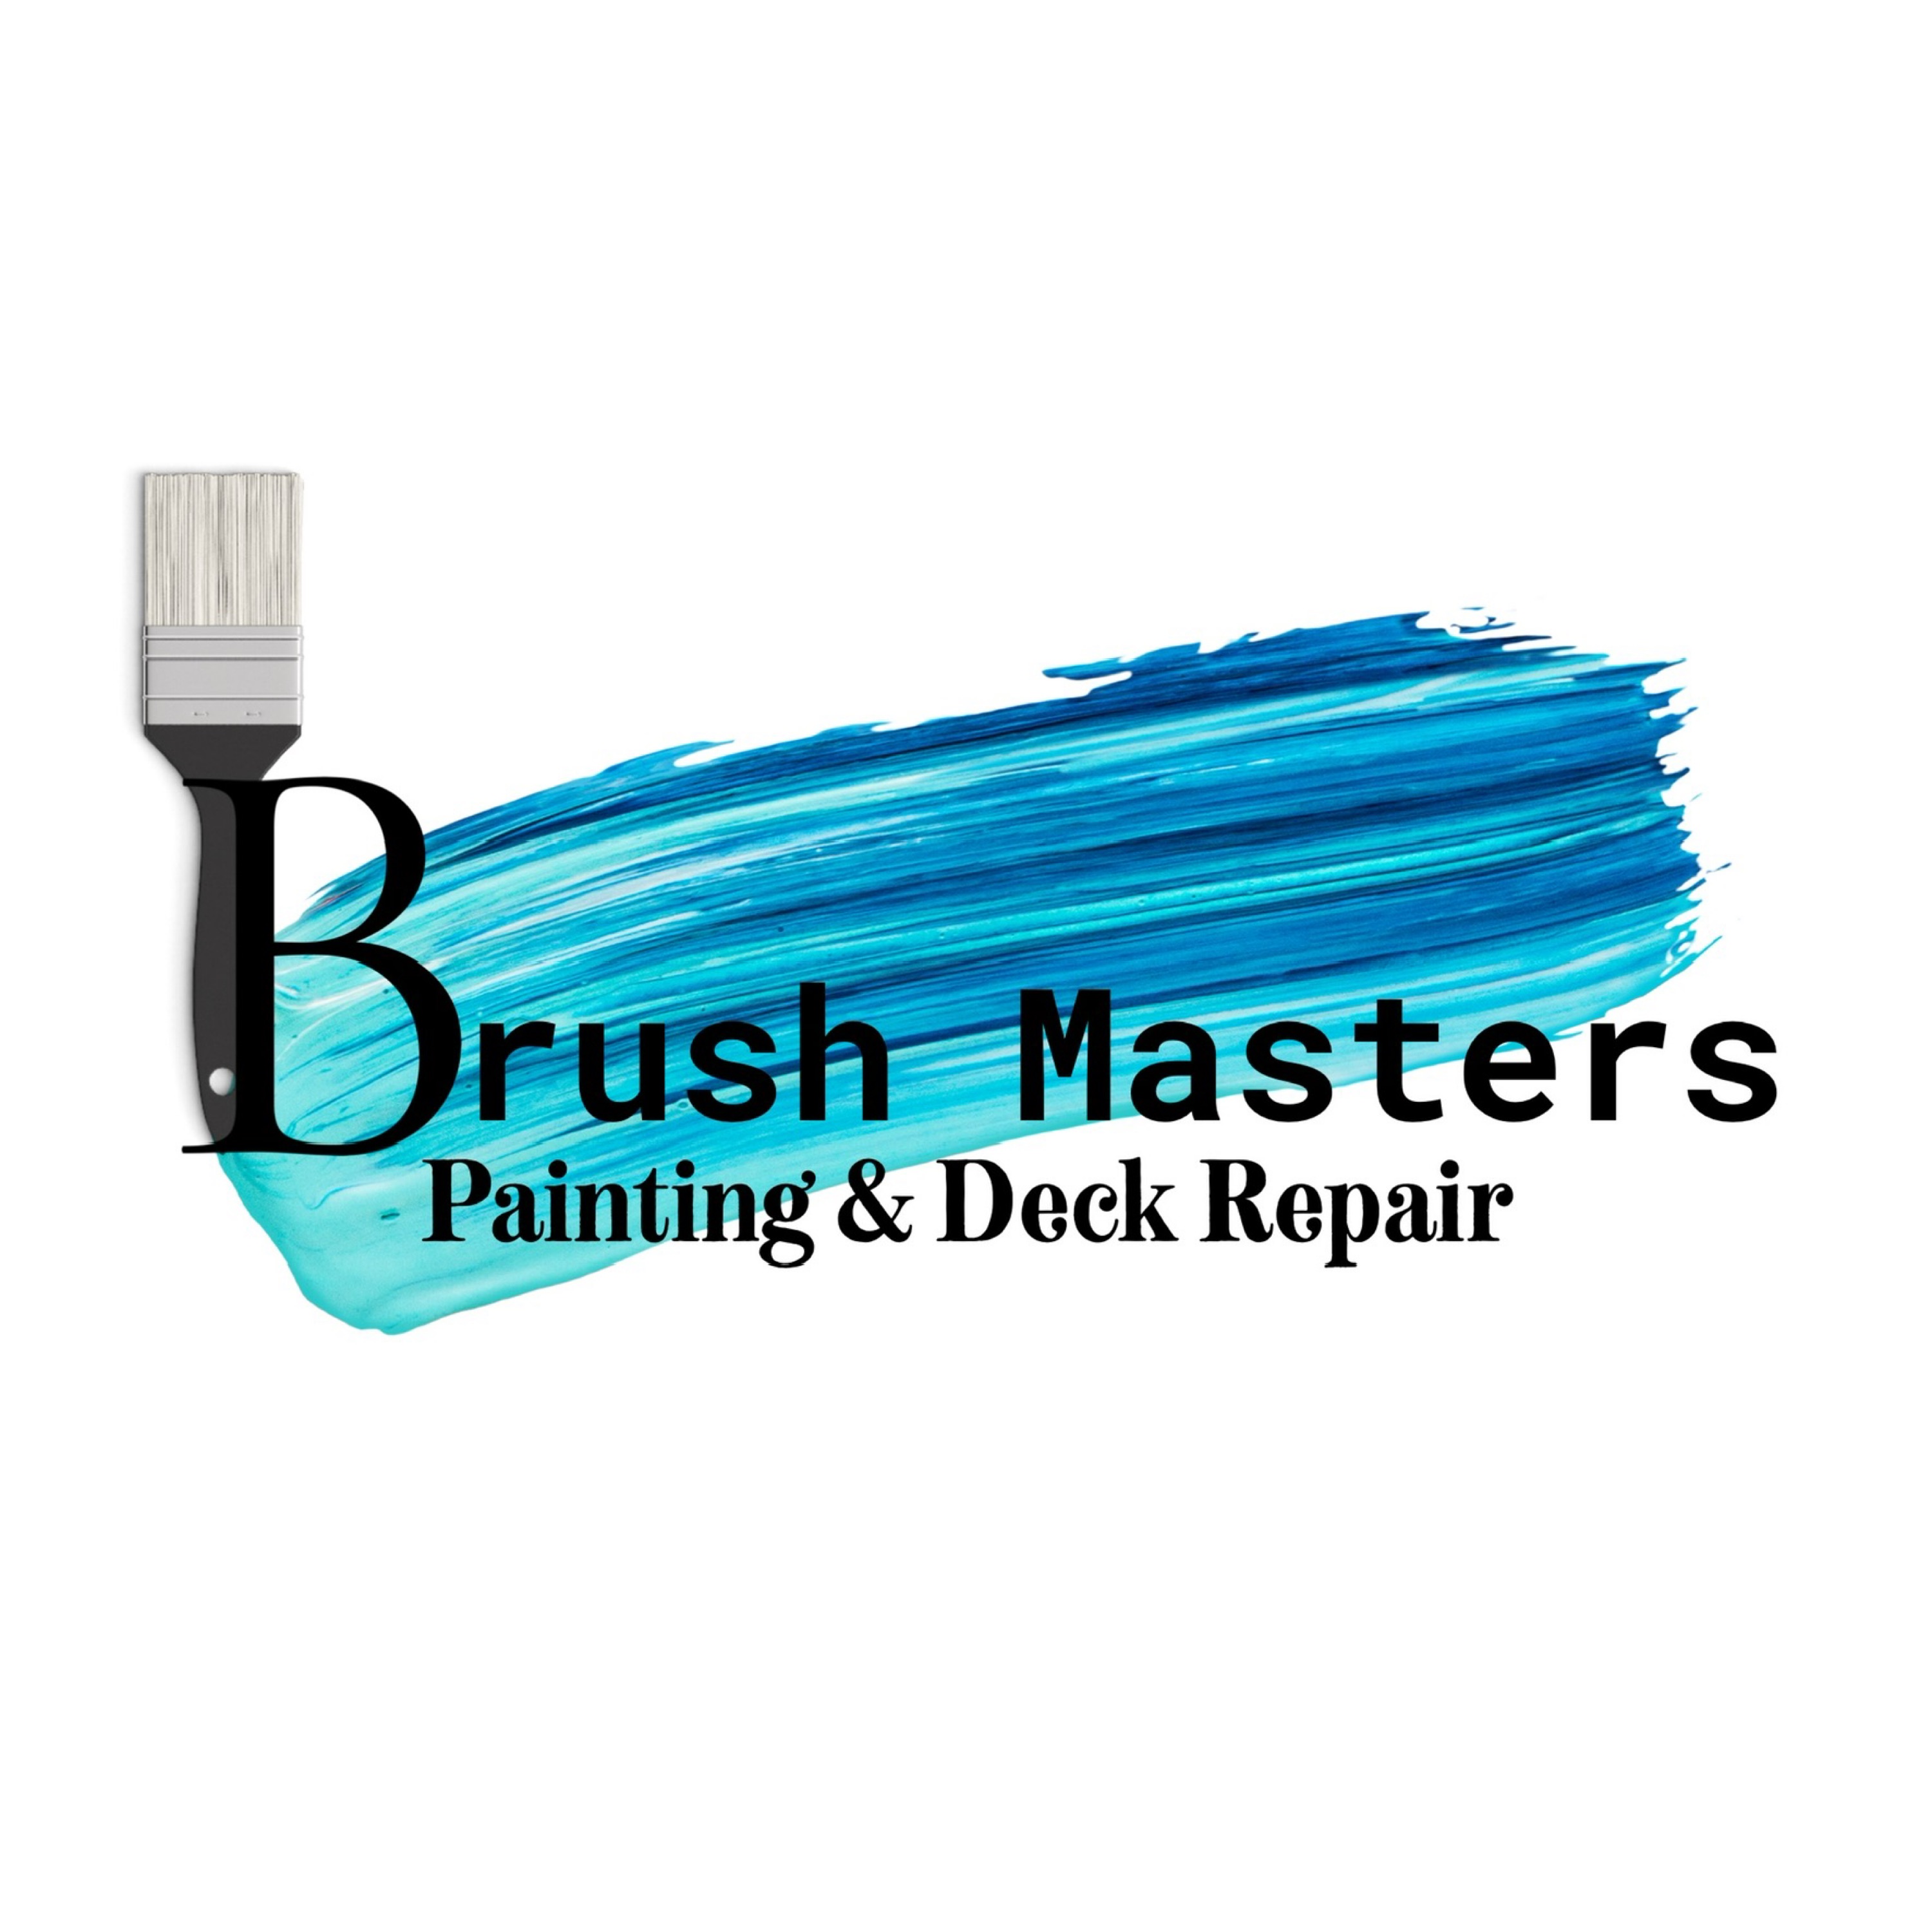 Brushmasters Painting & Deck Repair Logo